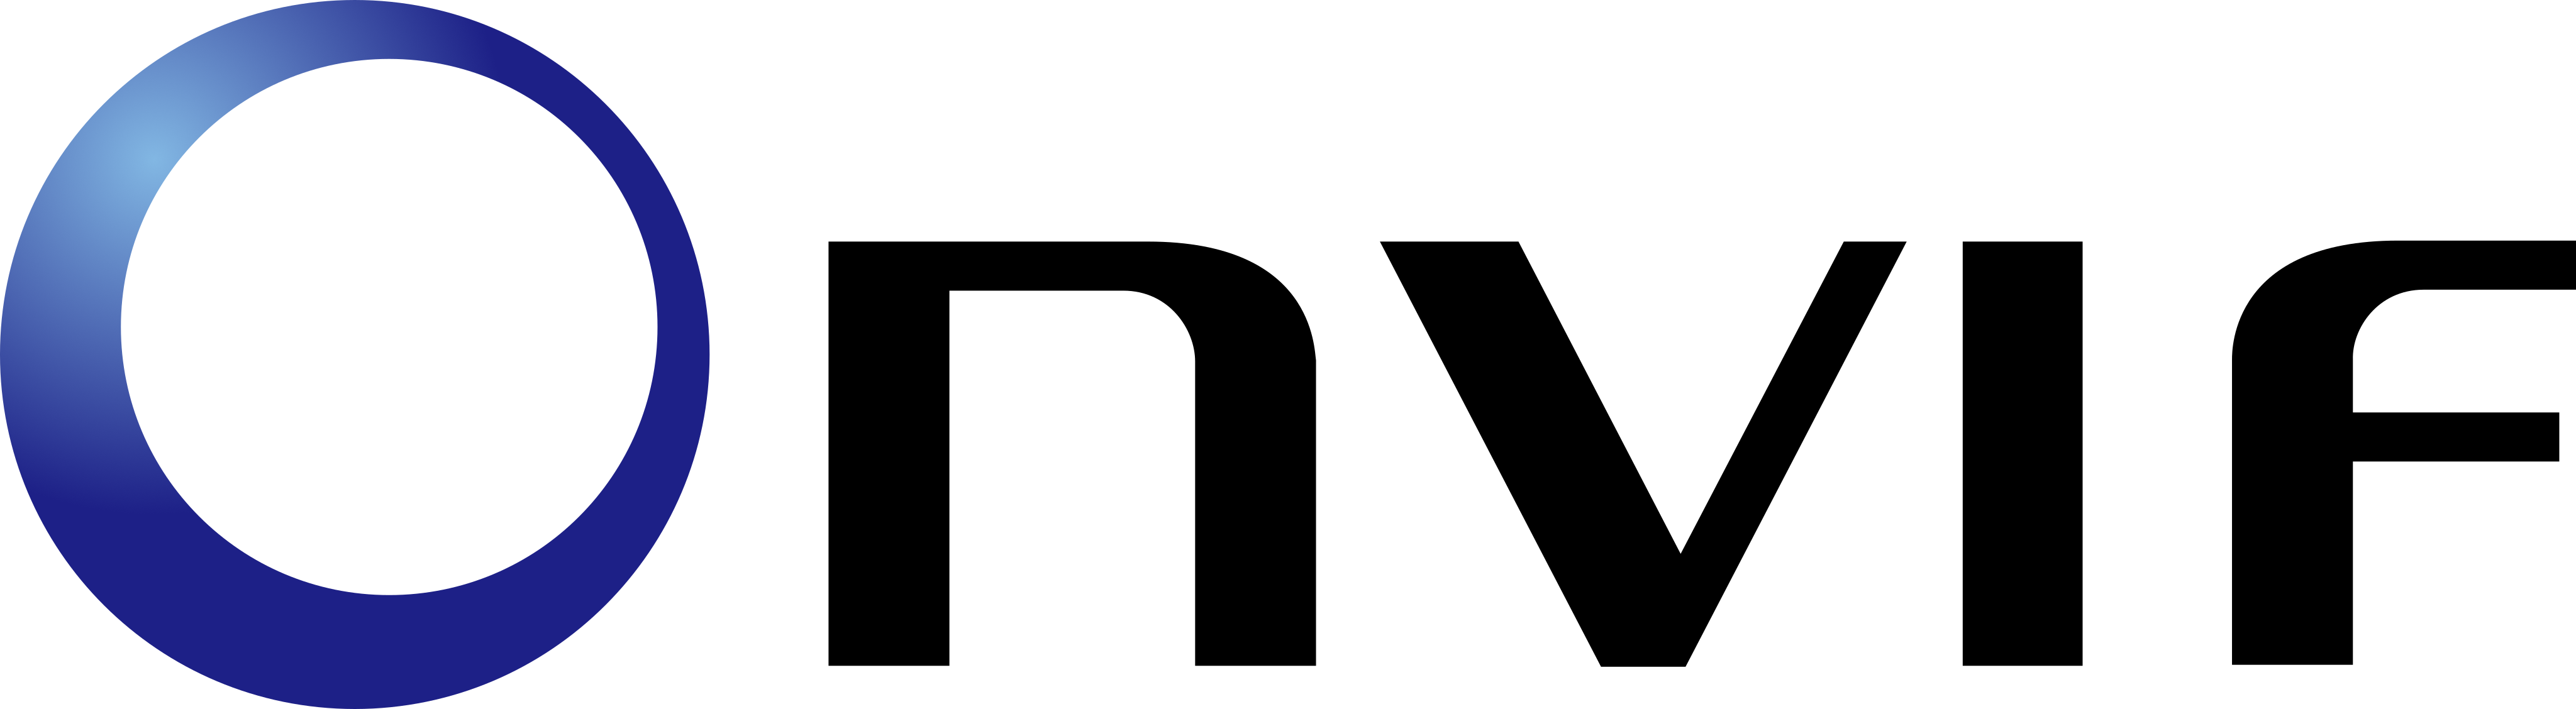 onvif logo - Onvif Logo